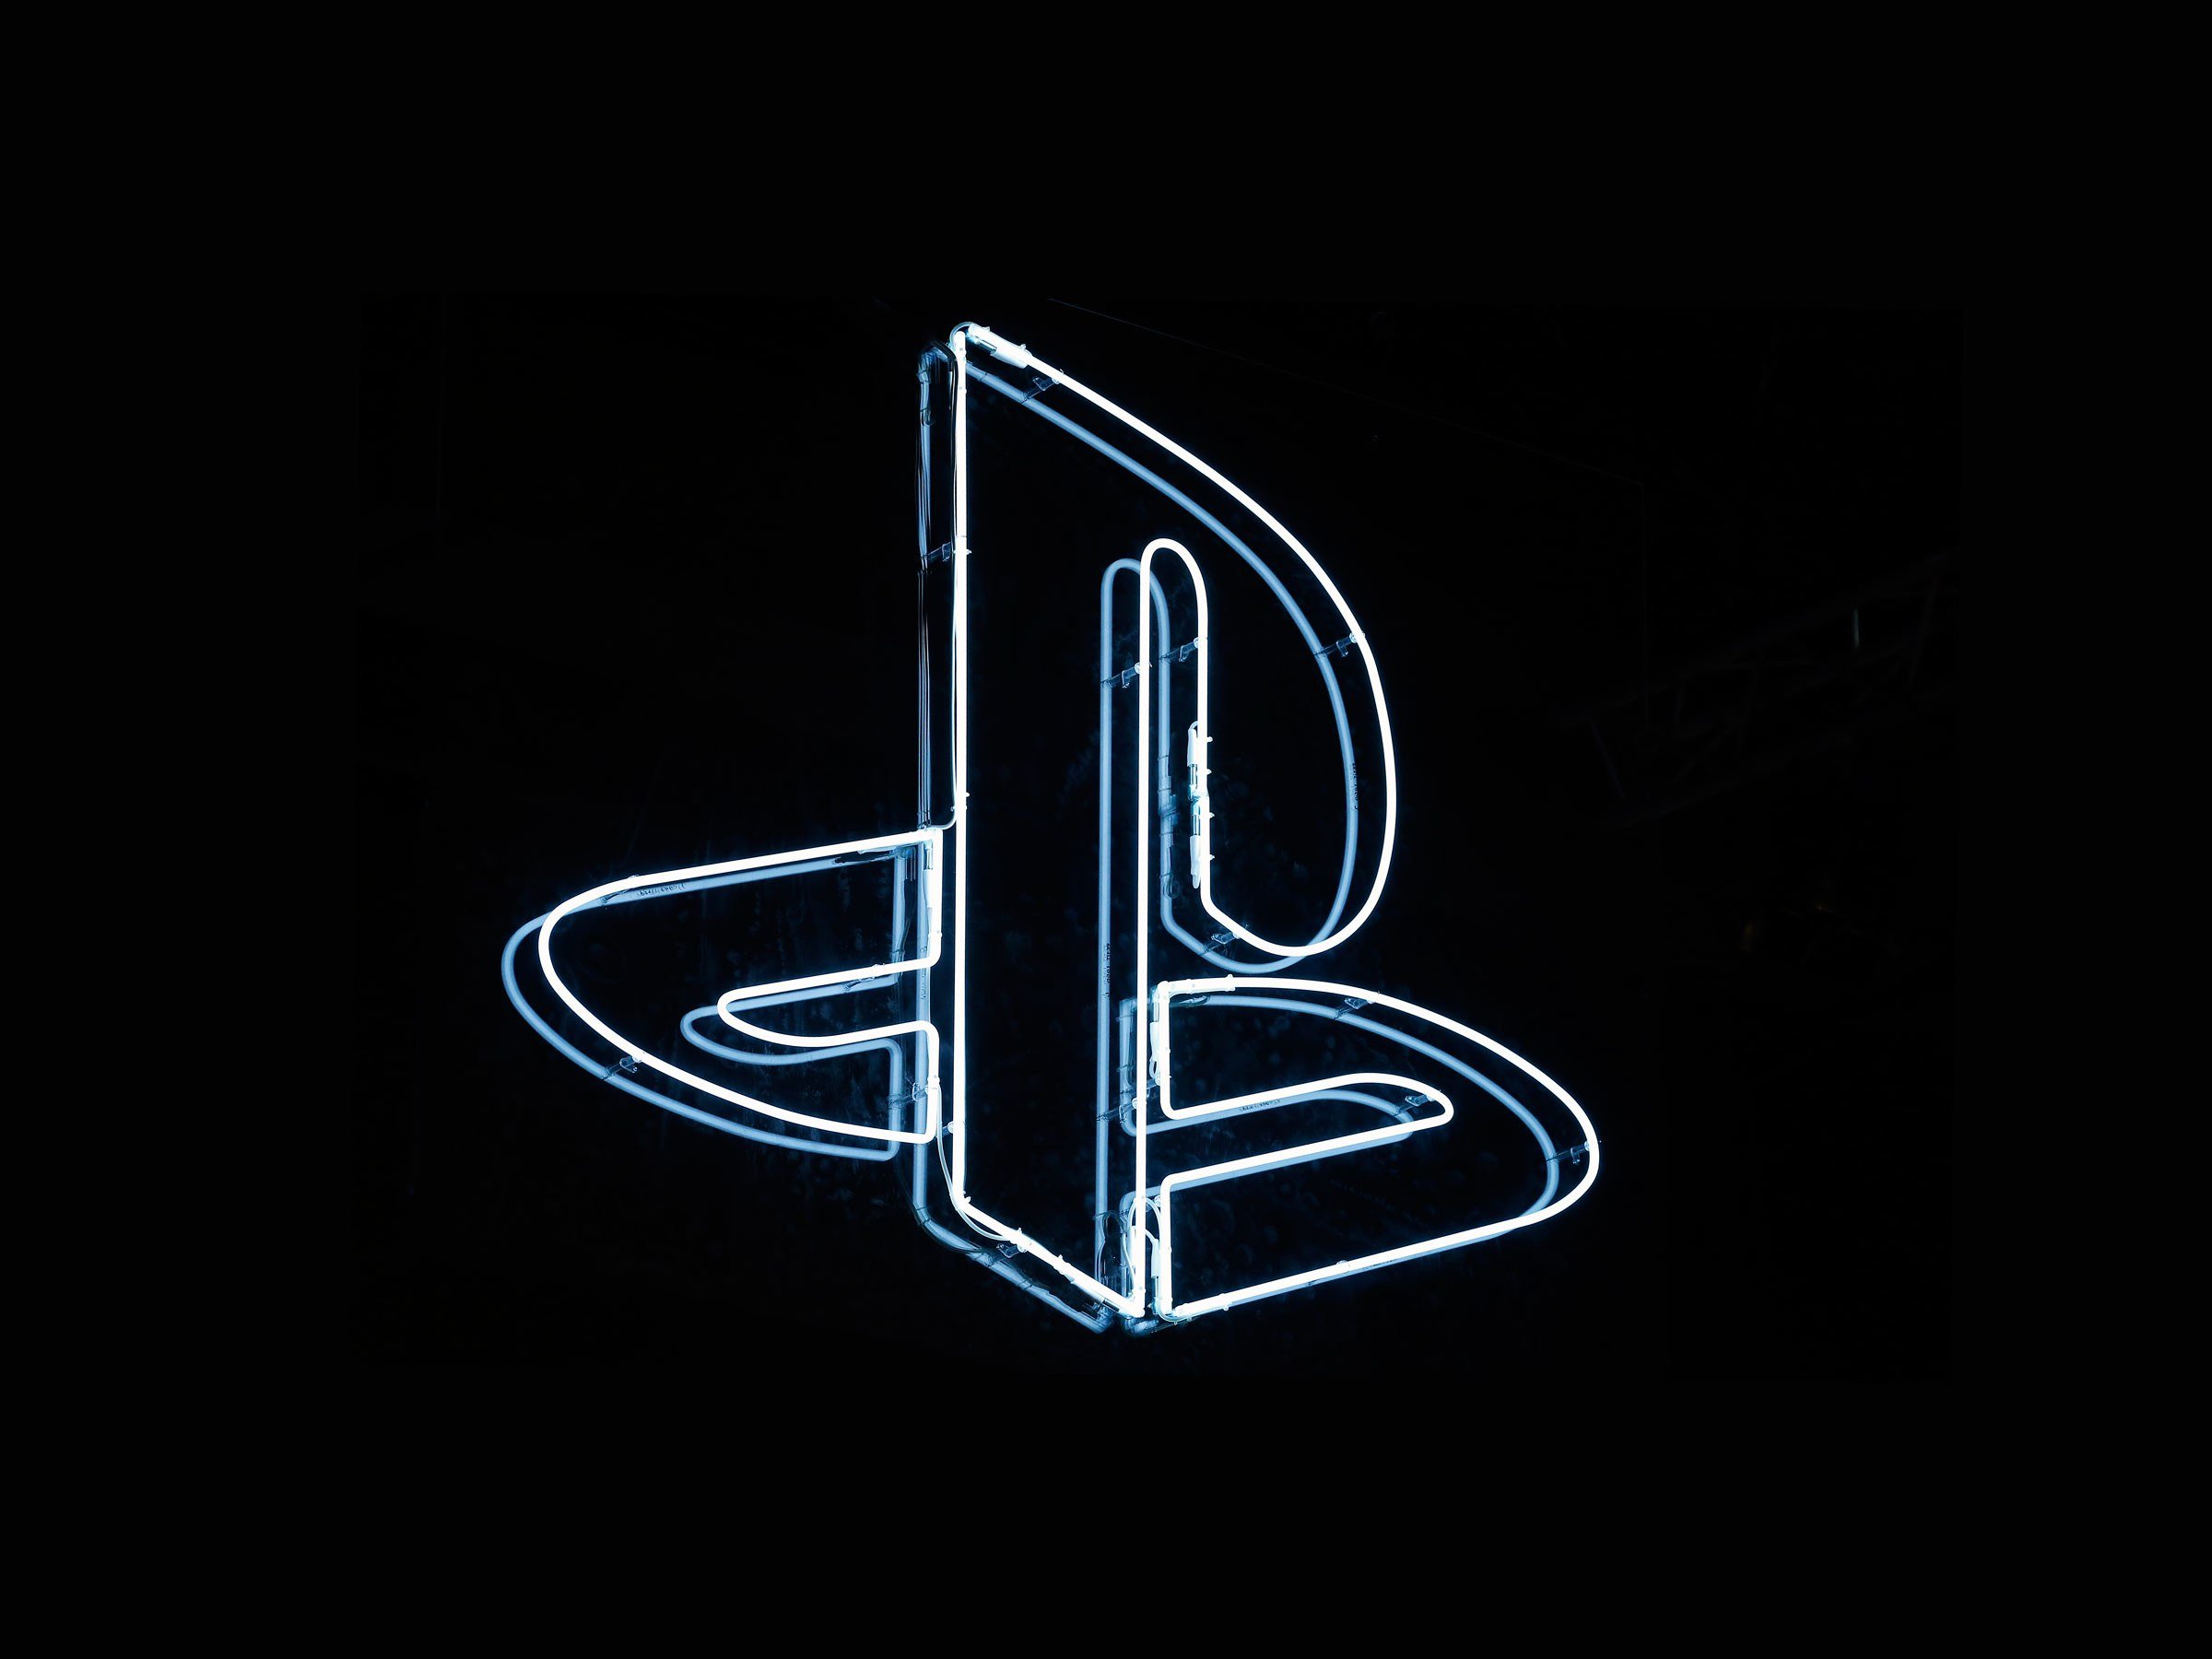 เปิดเผยคอนโทรลเลอร์ Sony PlayStation 5 ‘DualSense’ ใหม่ PS5 Gamepad เปรียบเทียบกับคอนโทรลเลอร์ Microsoft Xbox Series X ได้อย่างไร